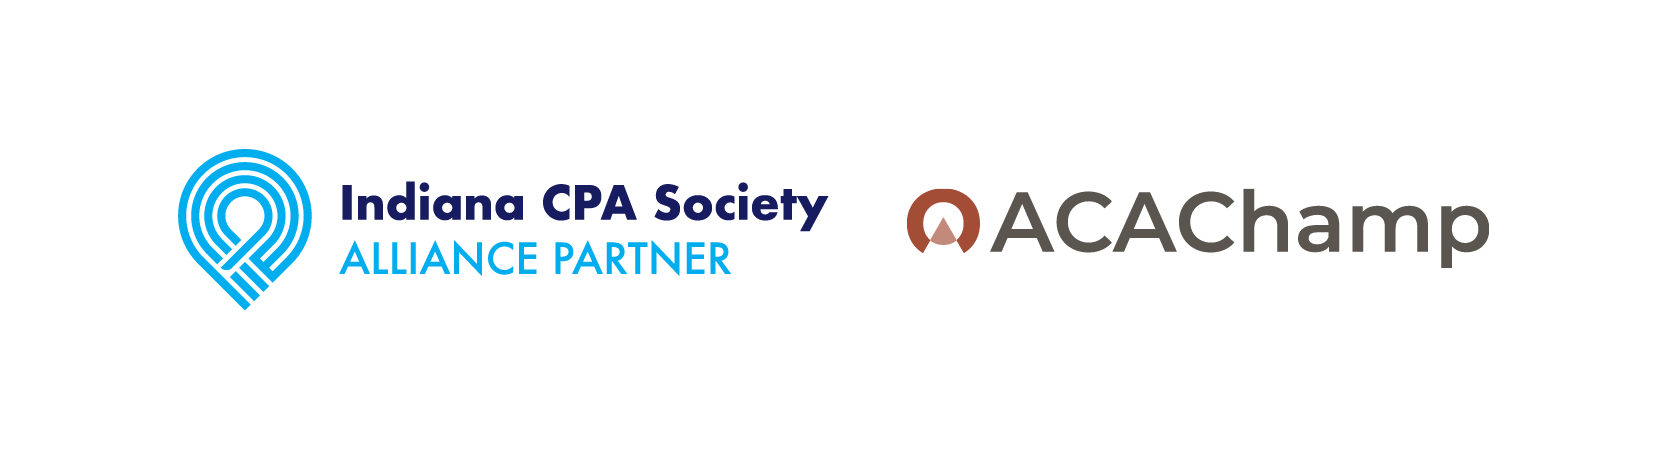 Alliance Partner ACAChamp